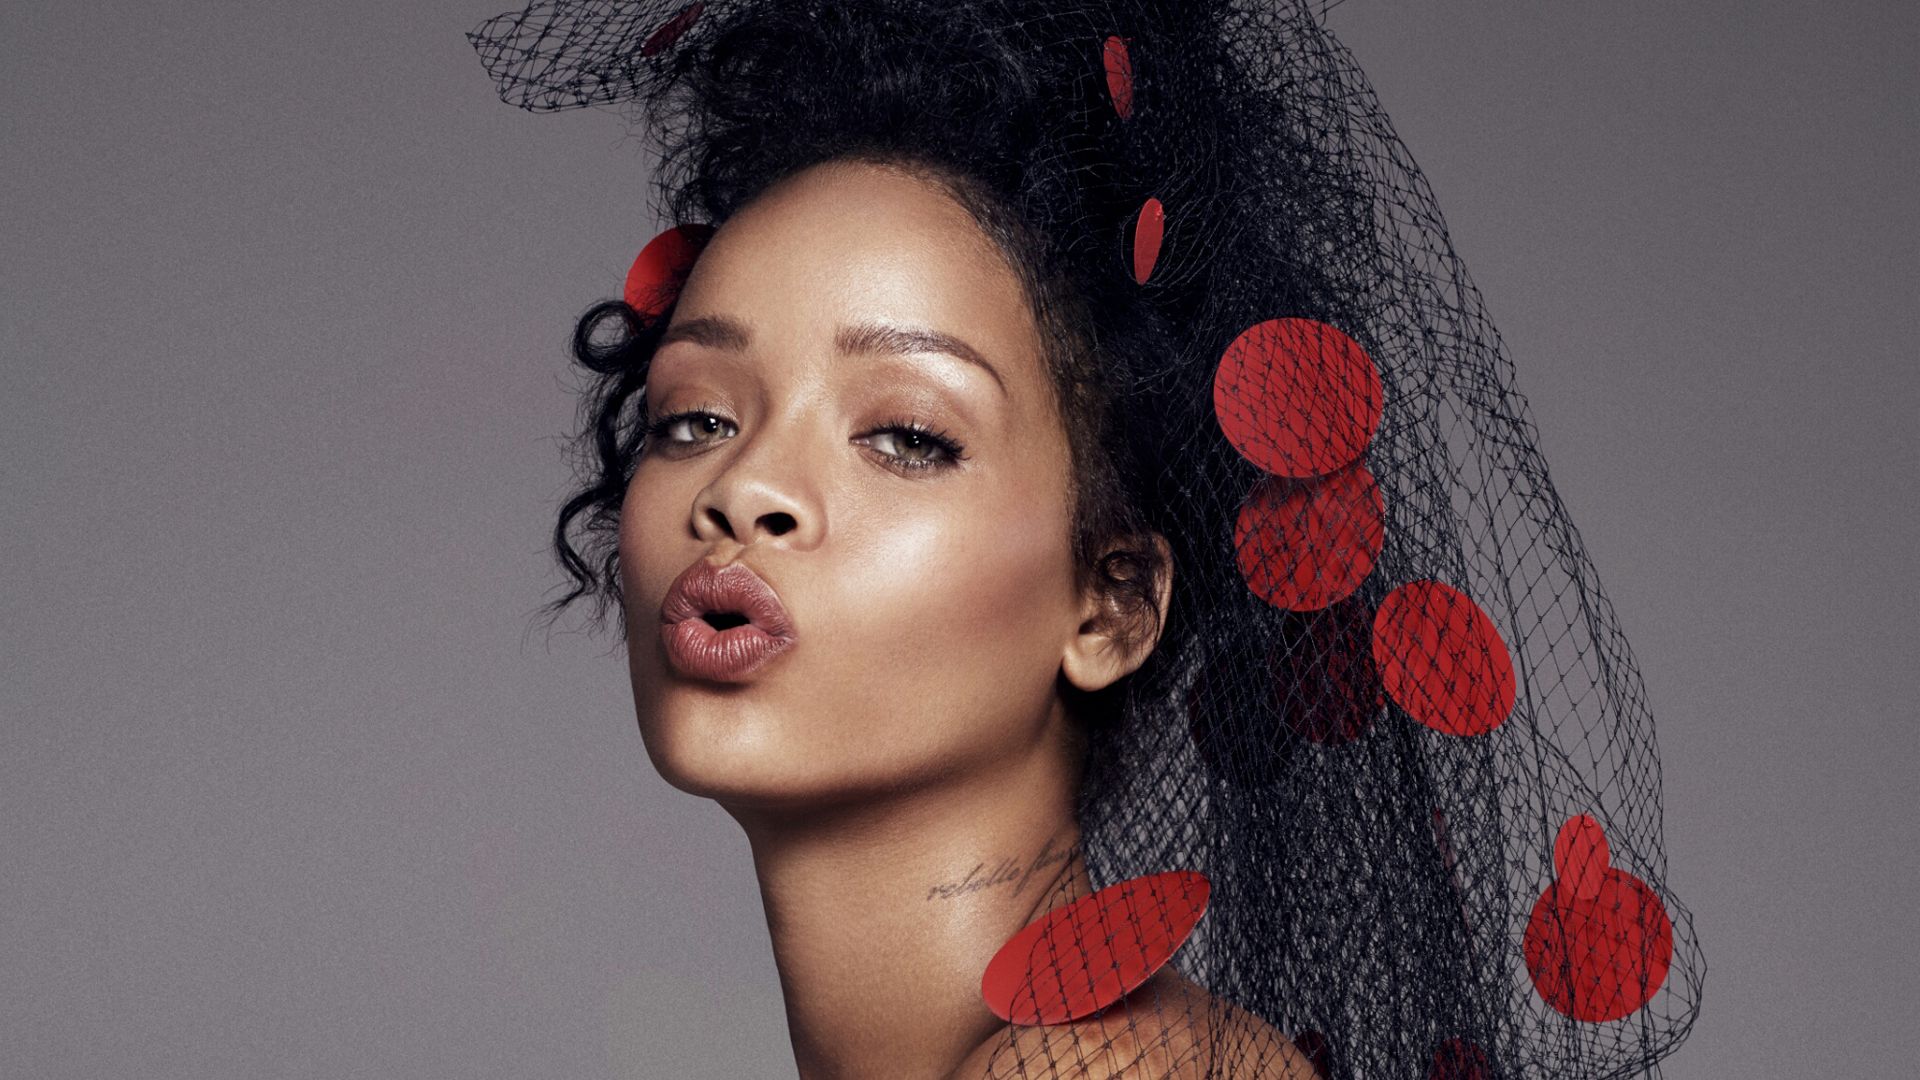 Wallpaper Hot Singer Rihanna